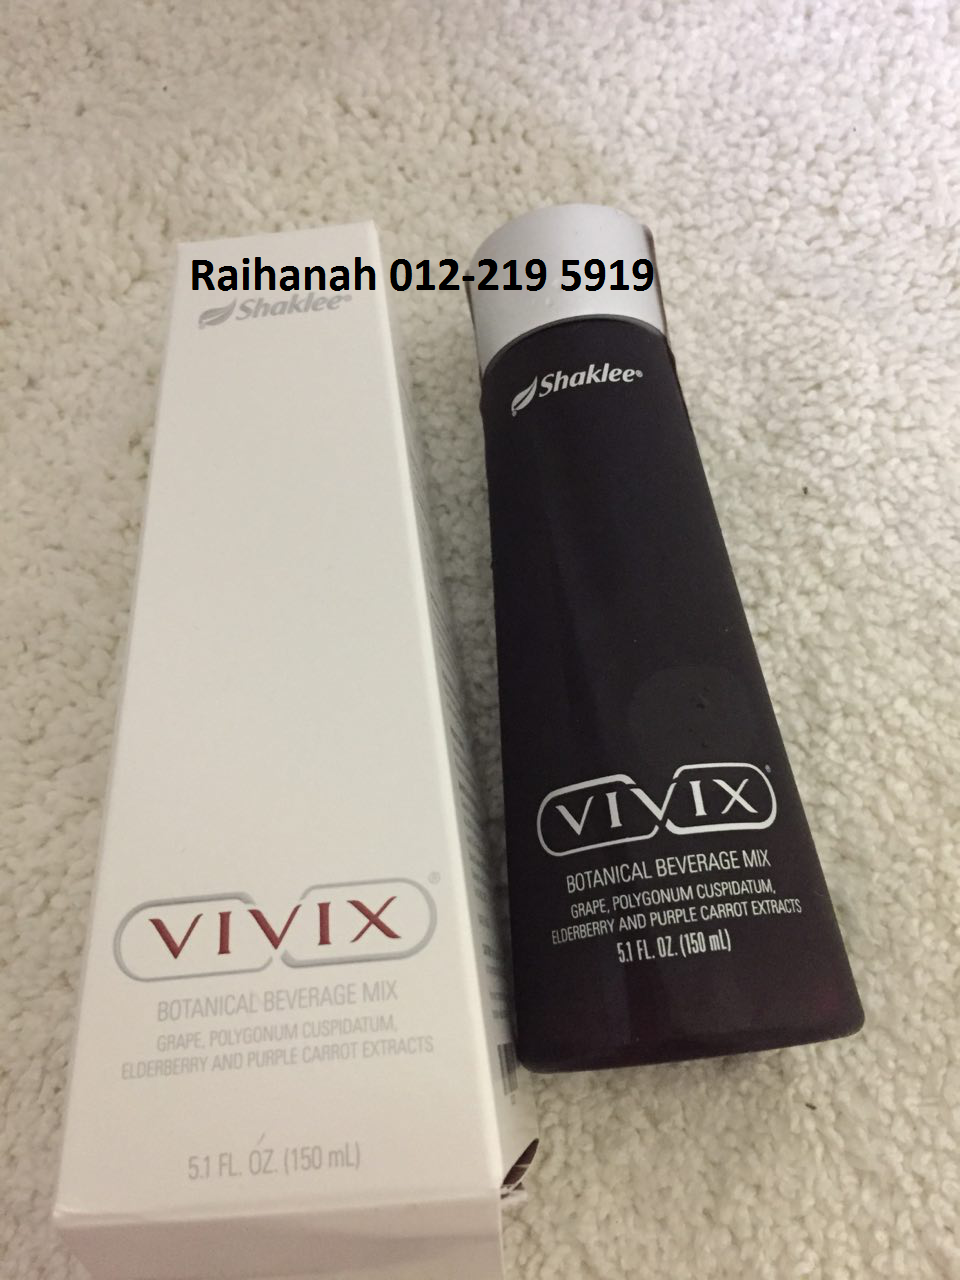 Vivix dan packaging yang ekslusif